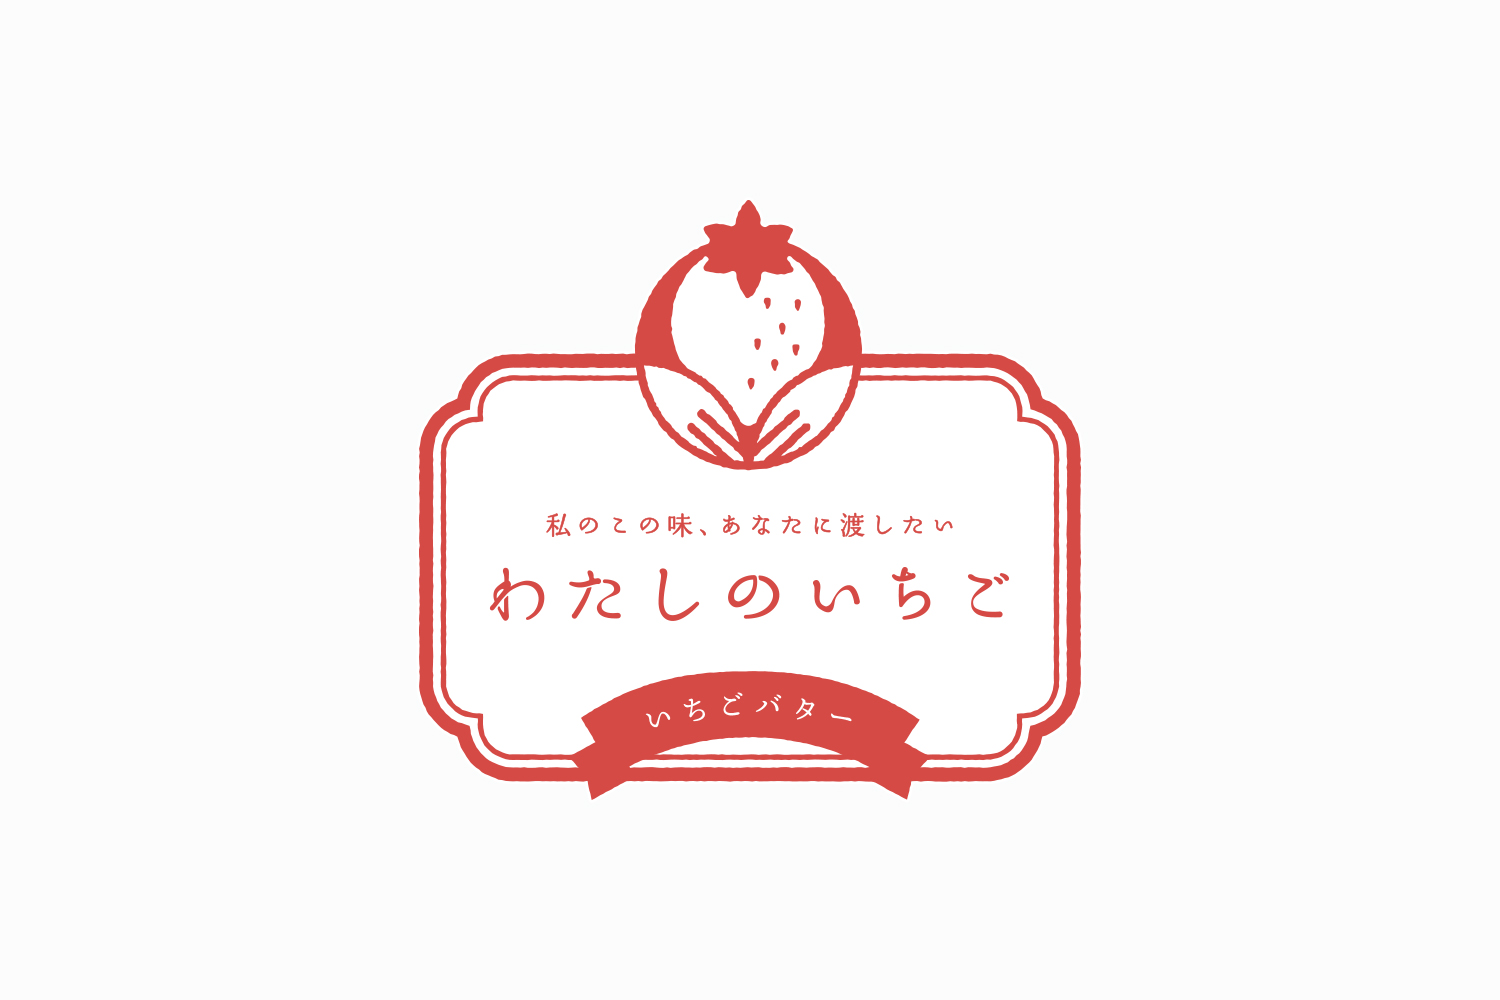 いちご農園のオリジナルブランドのロゴデザイン_愛知県大府市 わたしのいちご